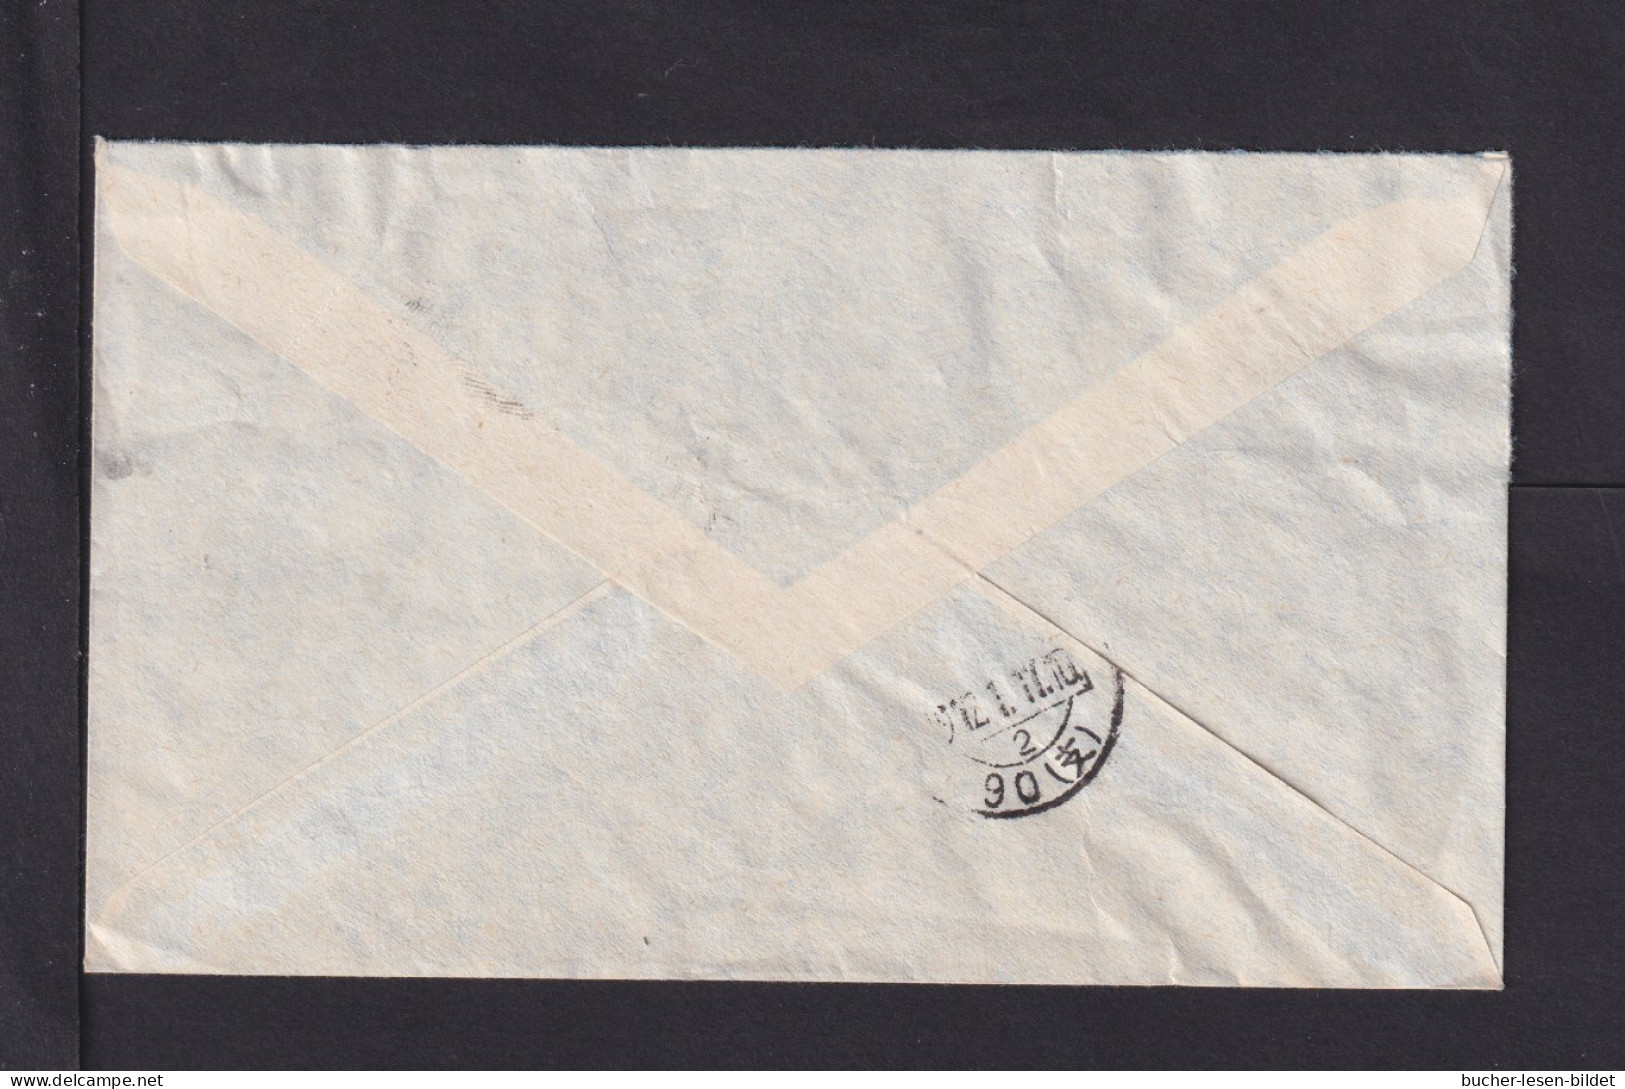 1972 - 50 C. Auf Luftpostbrief Ab KOWLOON Nach Peking - Briefe U. Dokumente